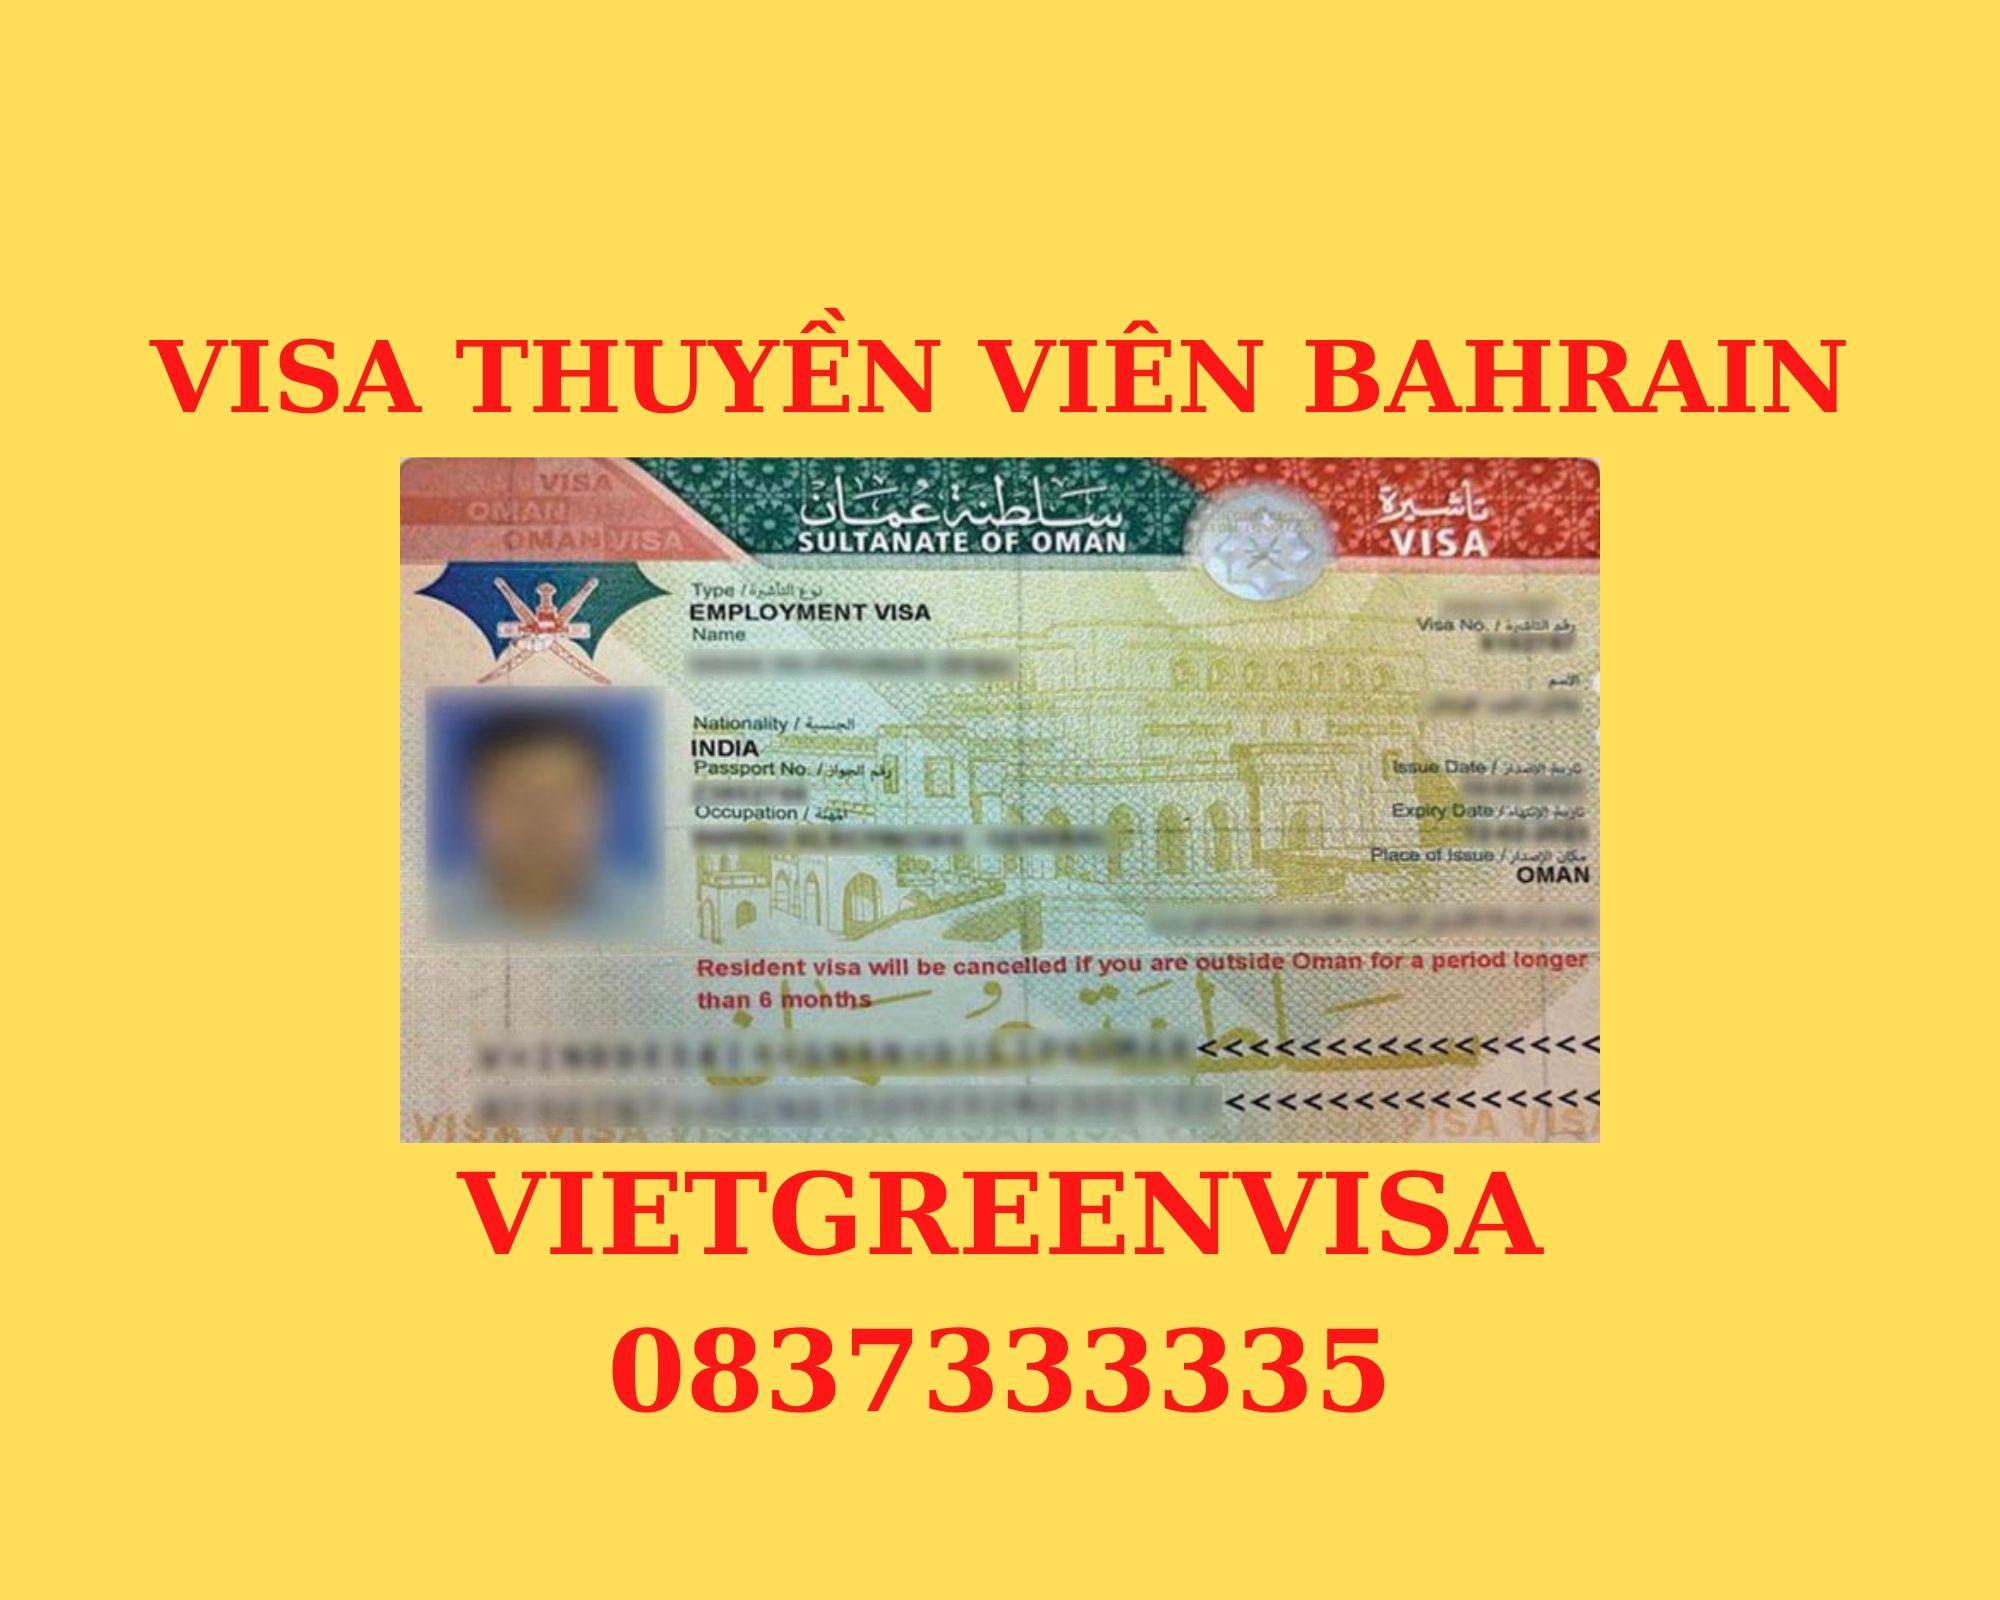 Visa thuyền viên Bahrain, visa Bahrain diện thuyền viên